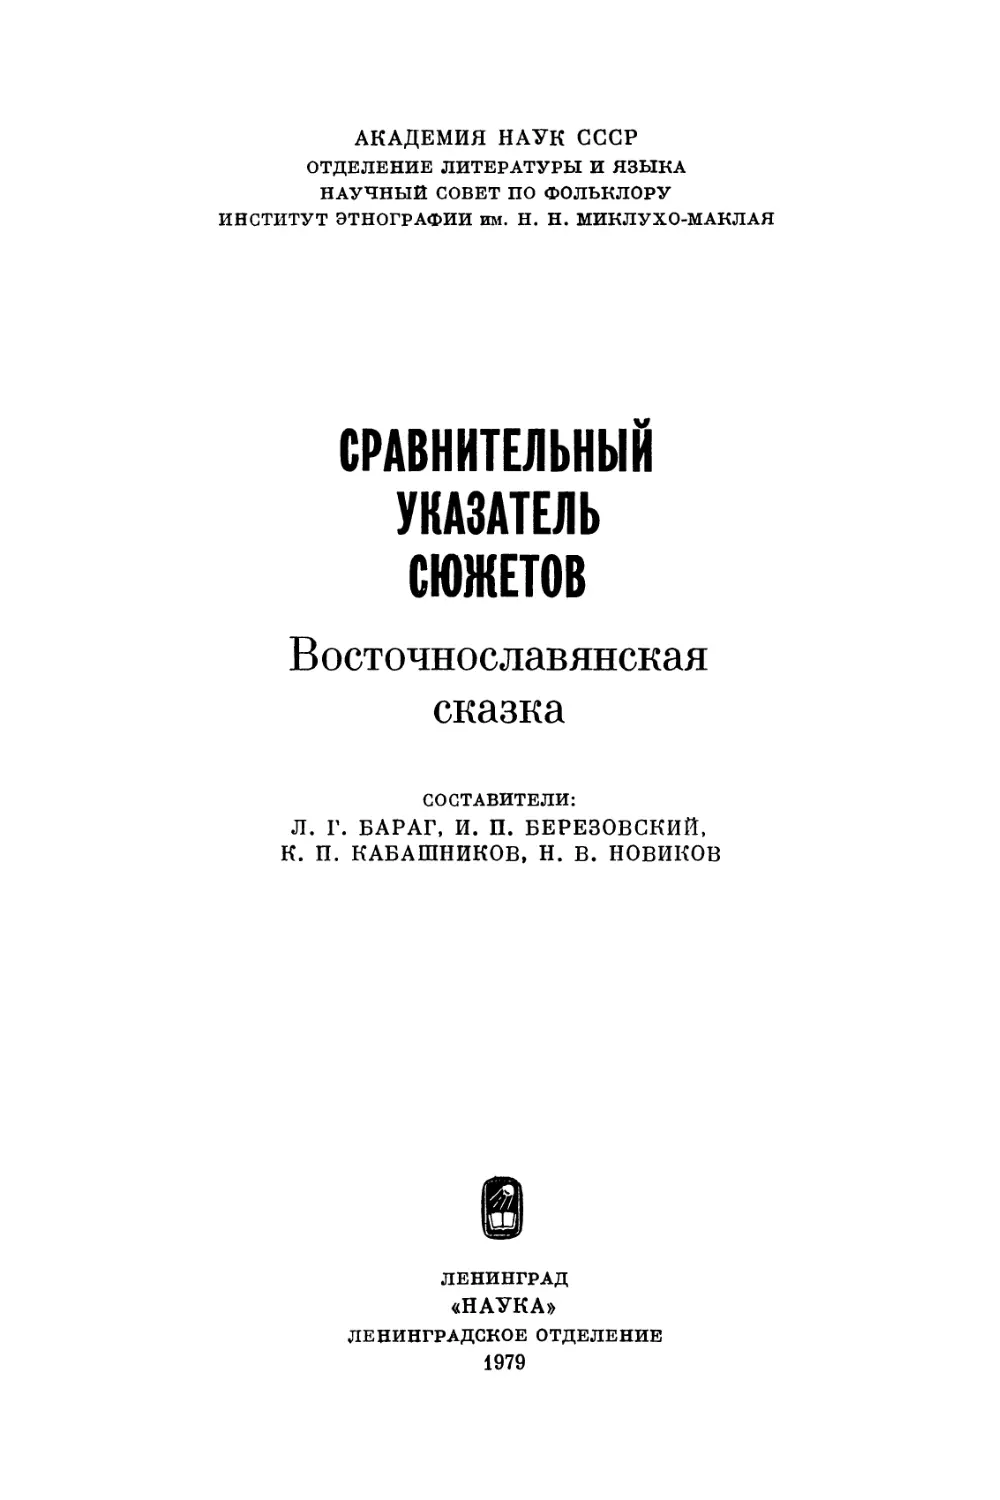 Сравнительный указатель сюжетов. Восточнославянская сказка - 1979